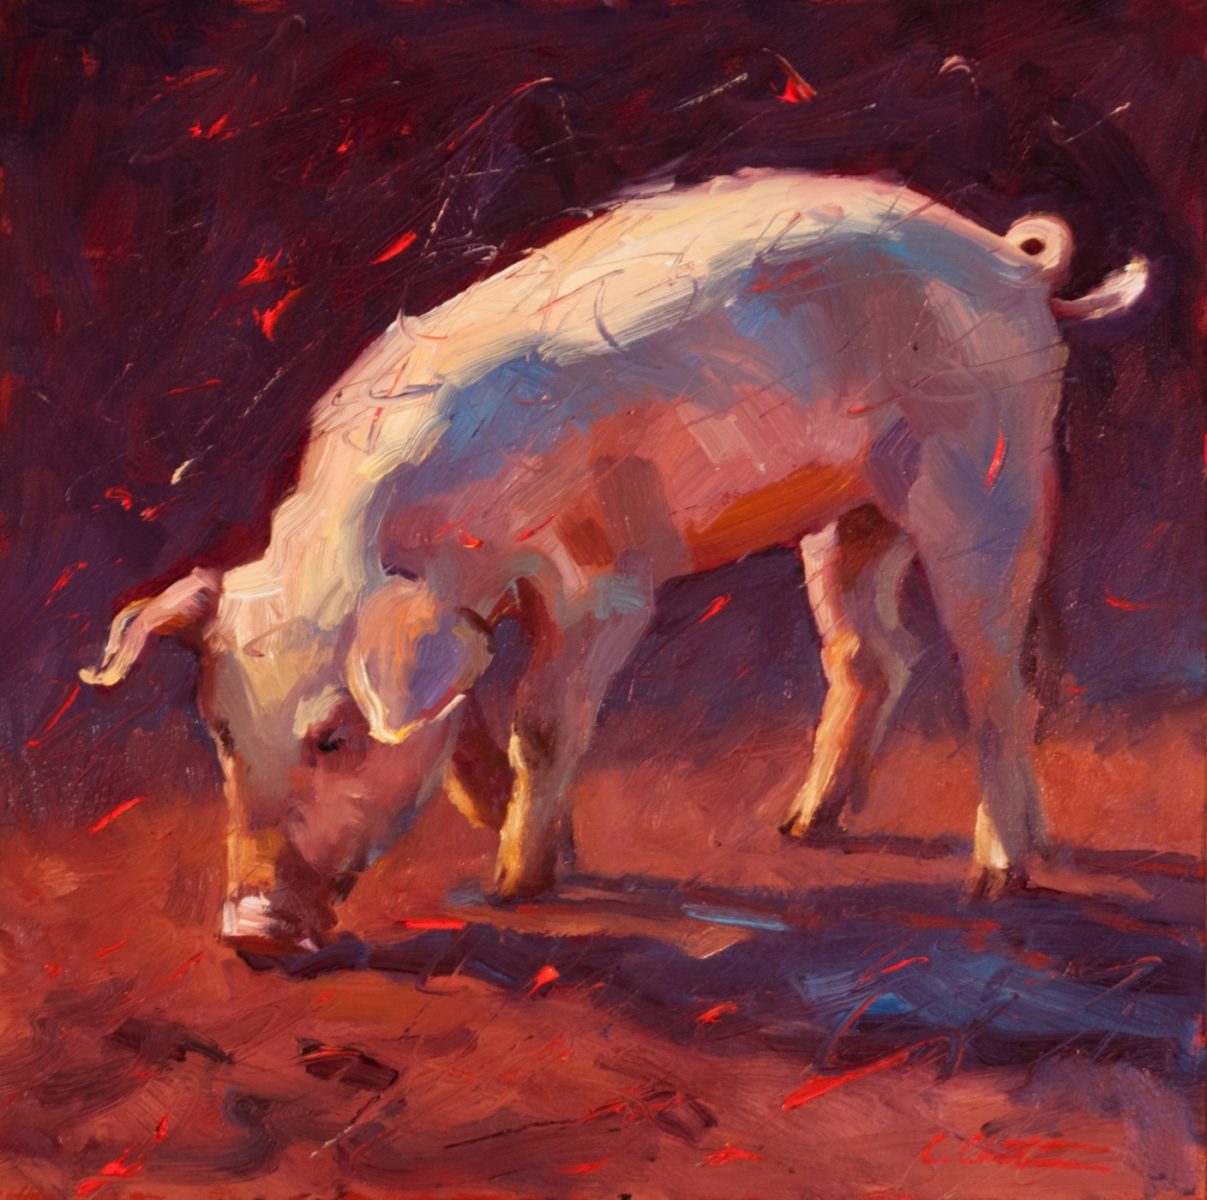 Oil painting of pig by Cheri Christensen